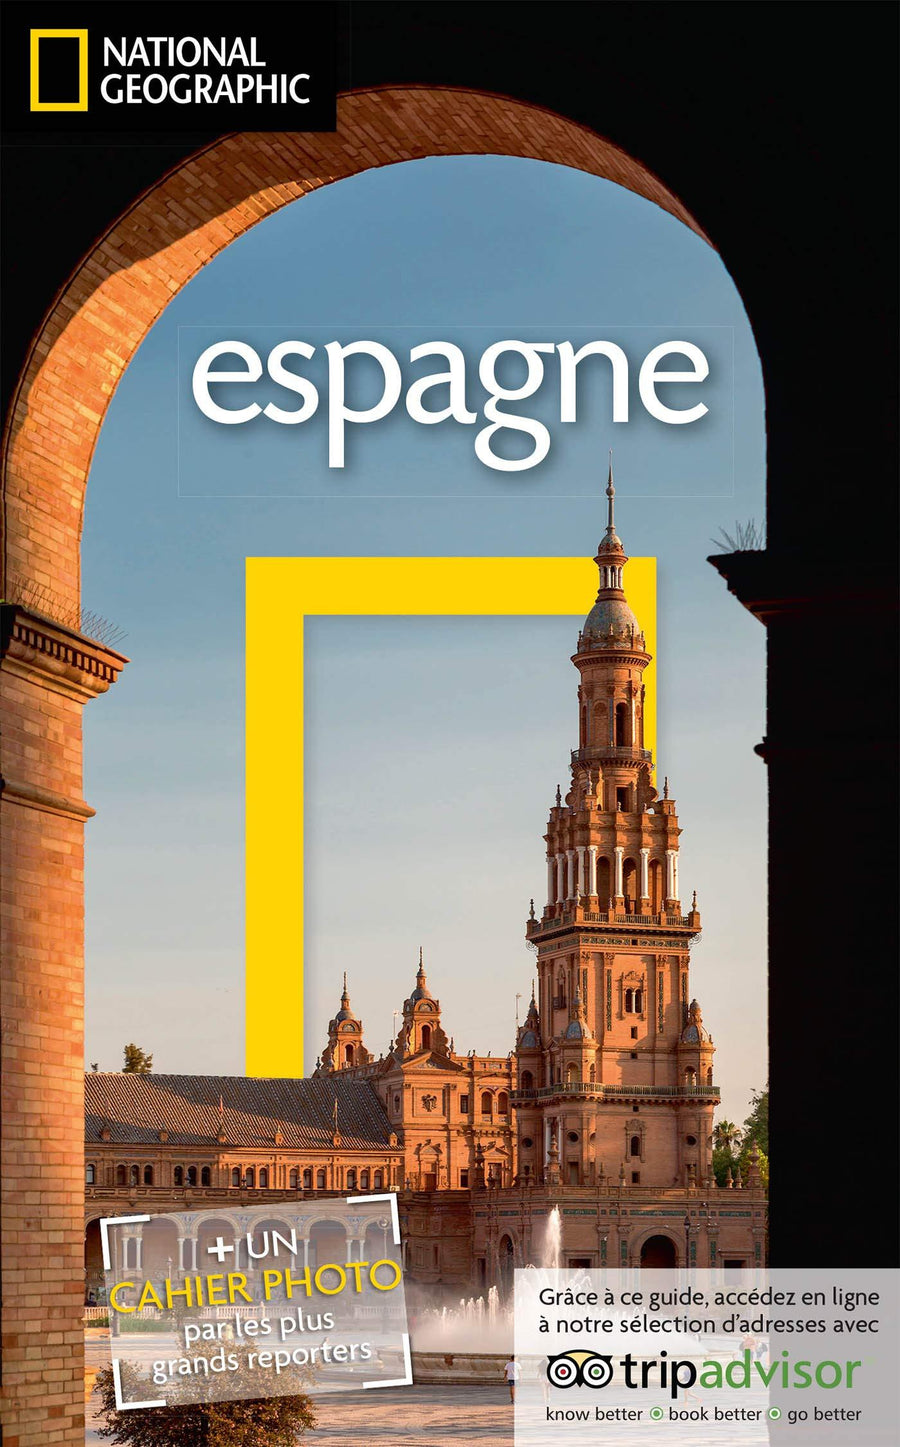 Guide de voyage - Espagne - Édition 2020 | National geographic guide de voyage National Geographic 